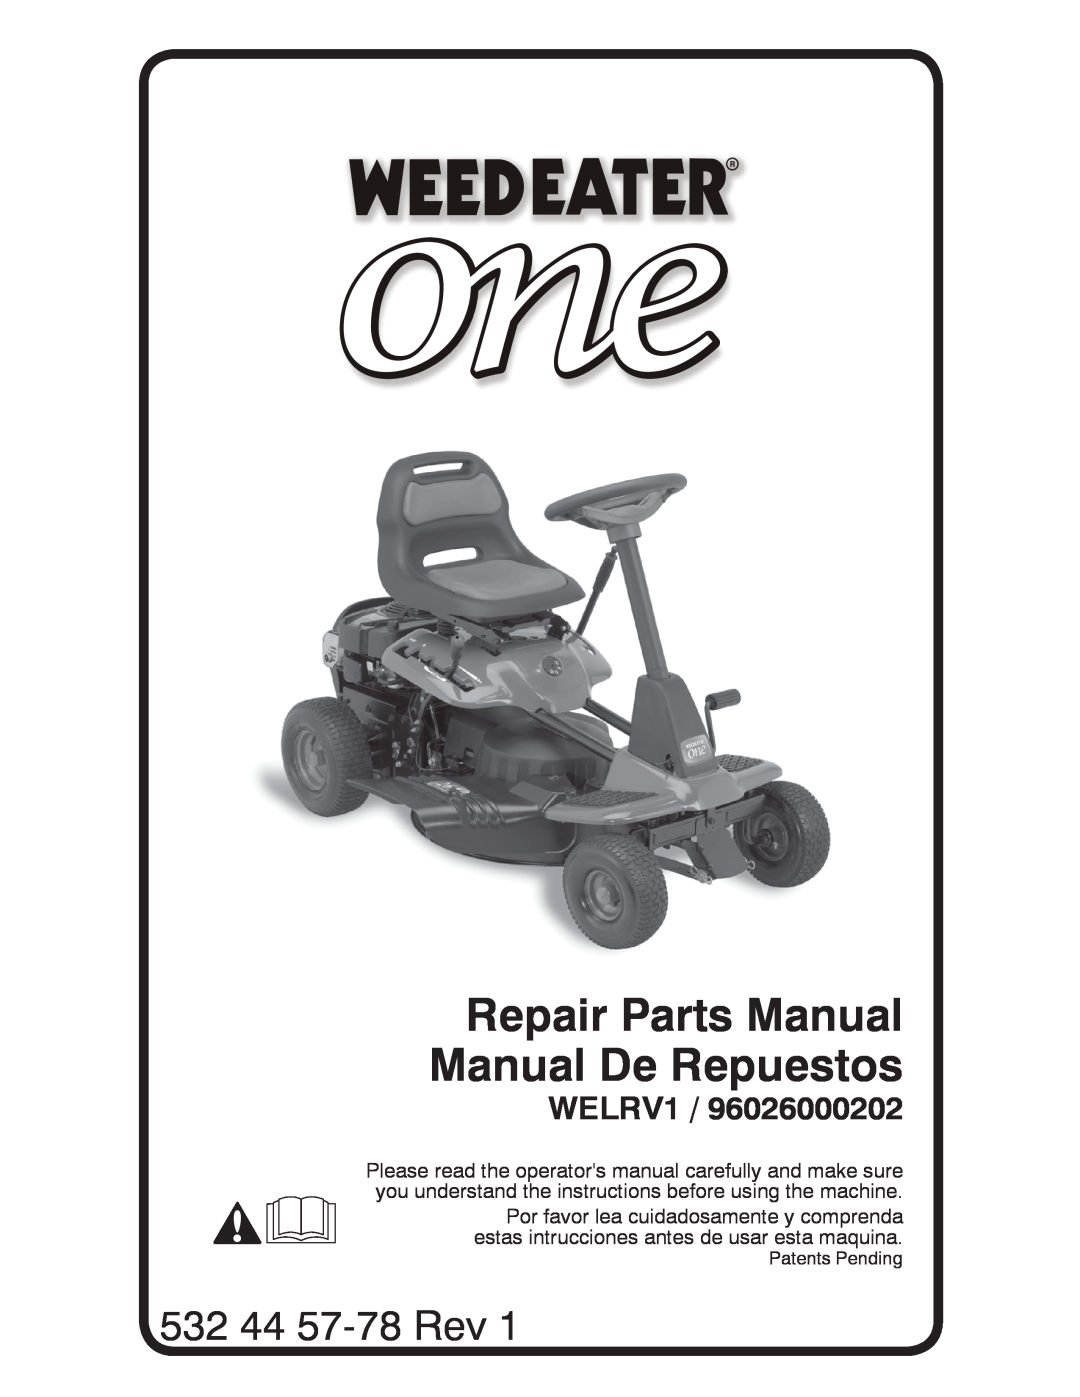 Weed Eater 96026000202 manual Repair Parts Manual Manual De Repuestos, 532 44 57-78 Rev, WELRV1 